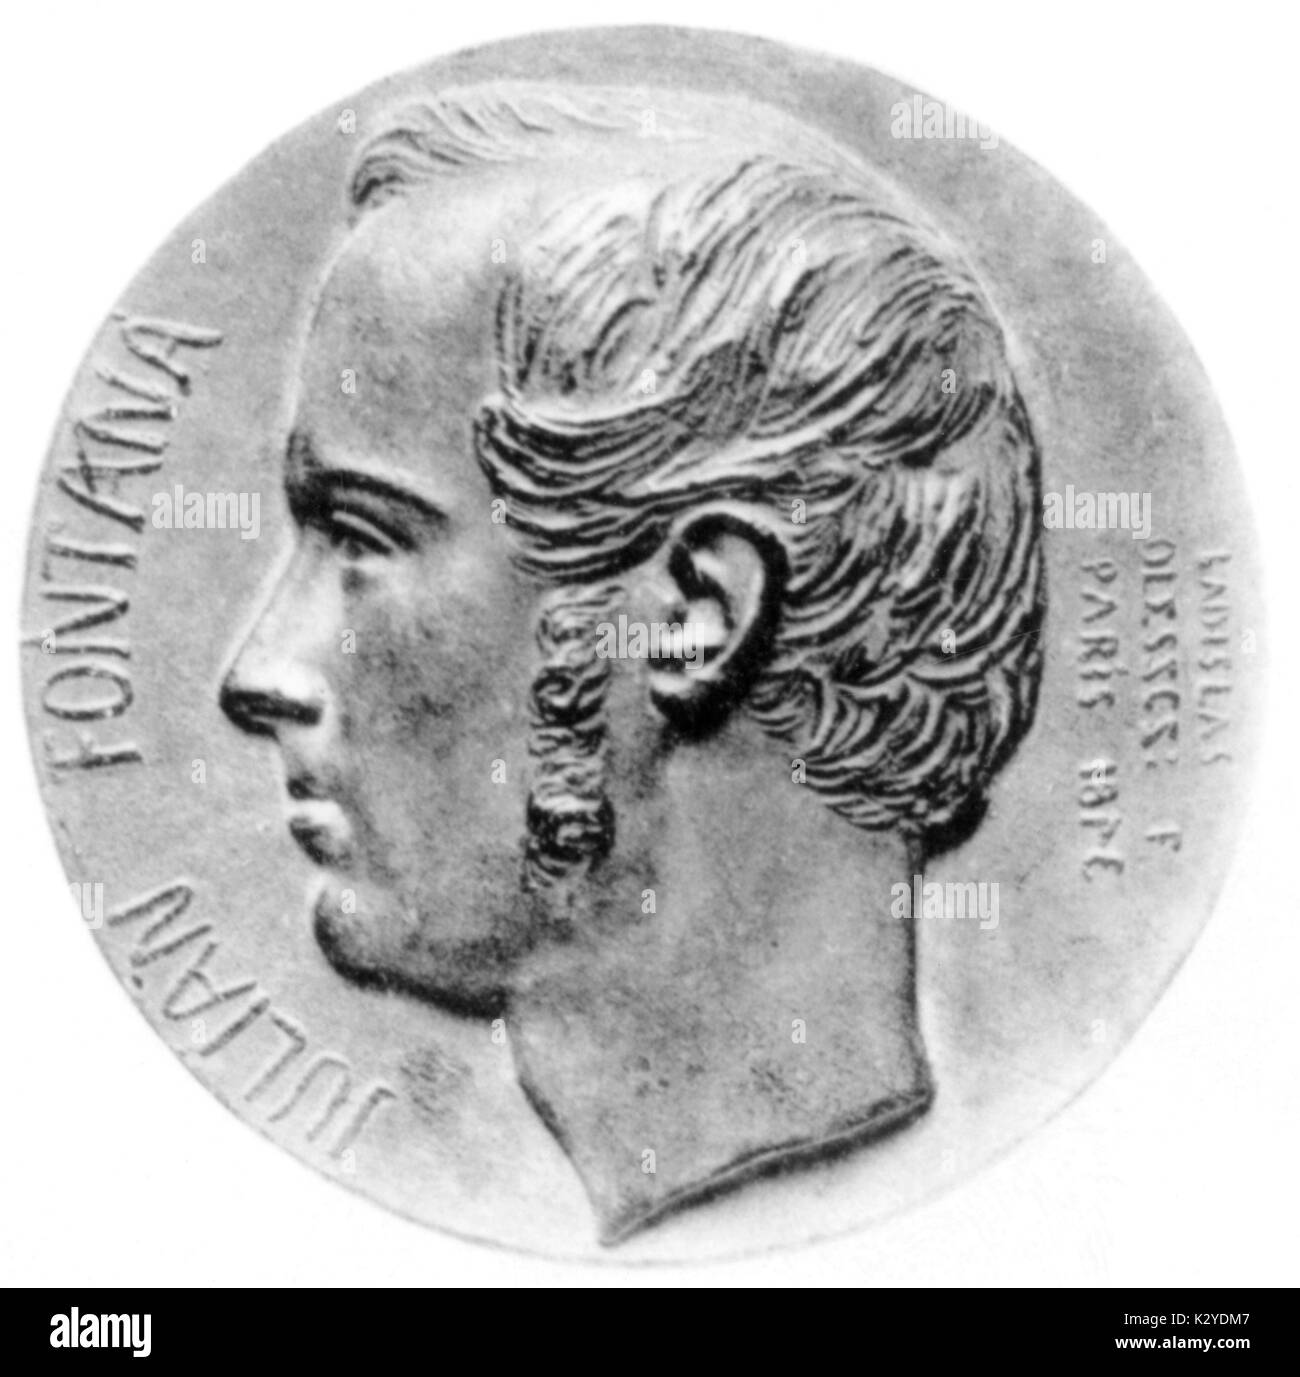 FONTANA, Julian - 1843 Medaglia di bronzo da Oleszczynski 1819-1869 - amico  di Chopin Foto stock - Alamy